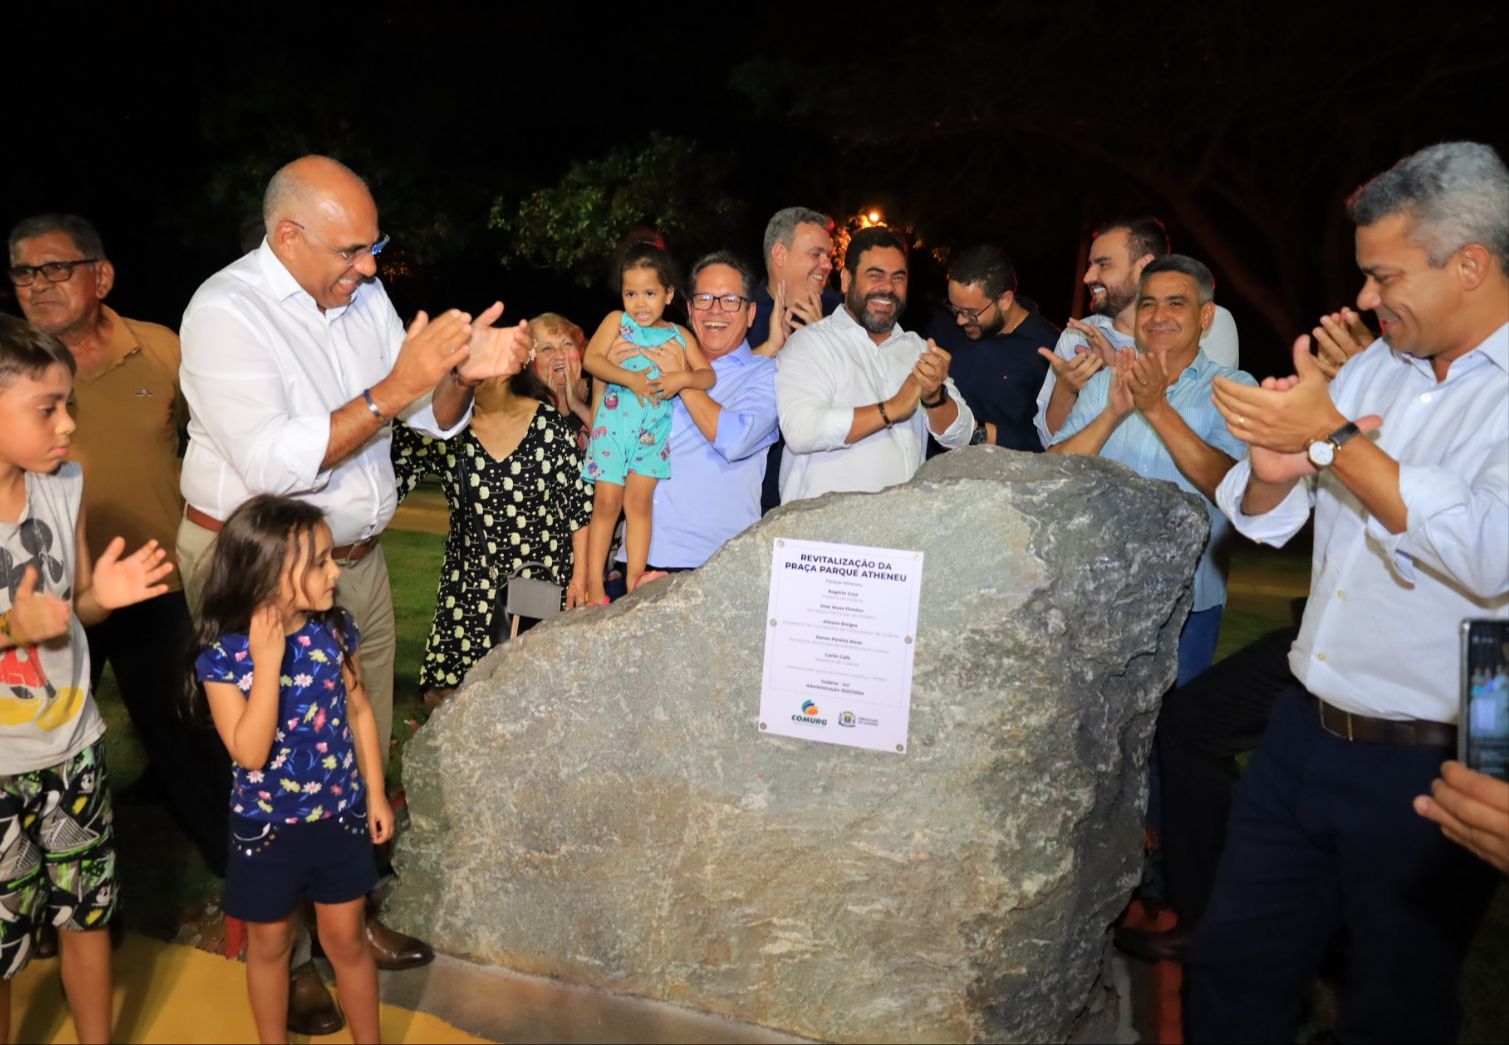 Município já inaugurou 59 novas praças, 7 parques e revitalizou outros 400 espaços públicos na administração do prefeito Rogério